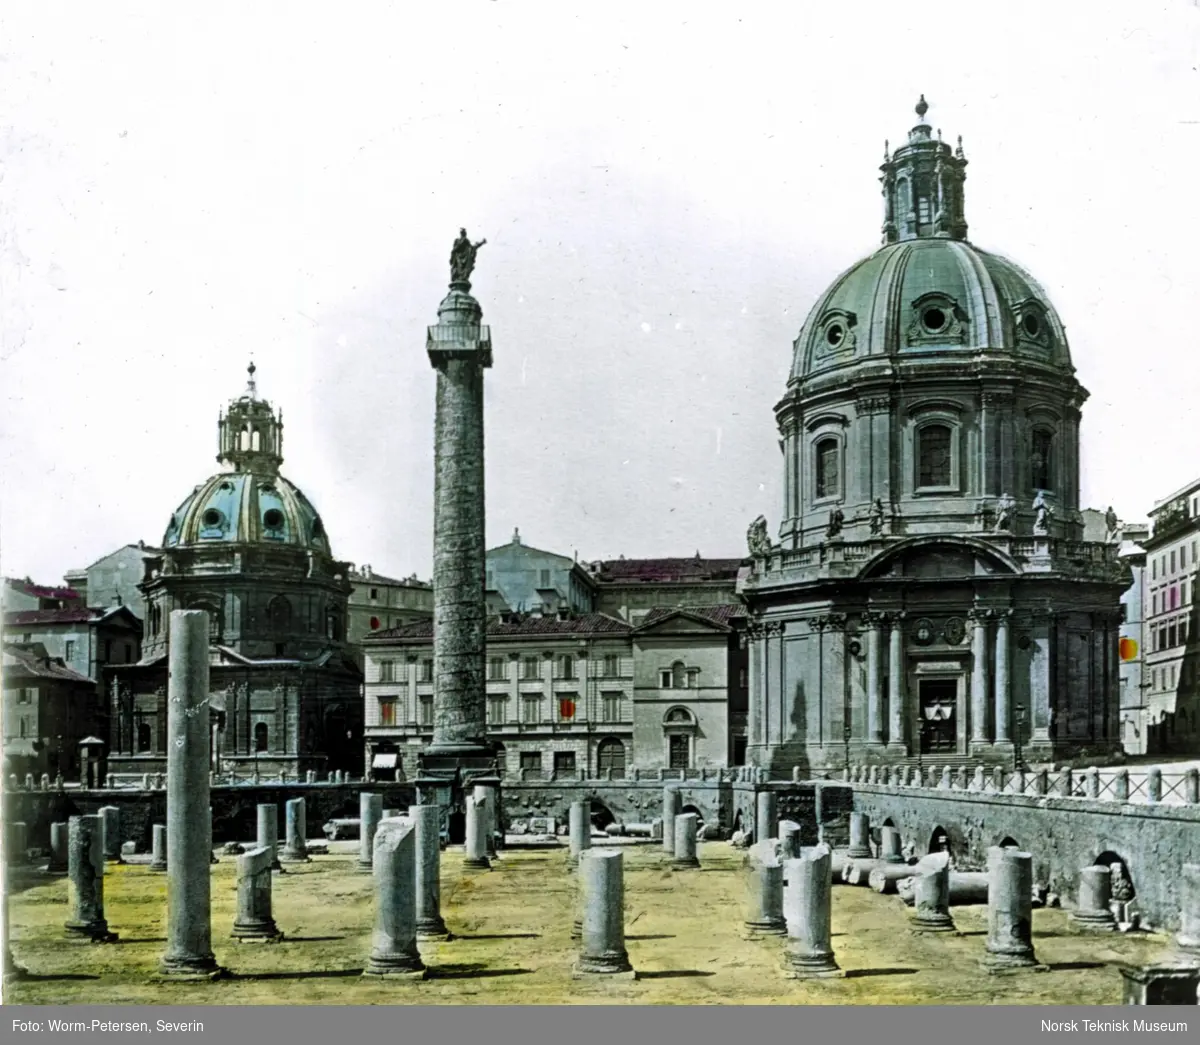 Trajans forum i Roma med Trojansøylen i midten av bildet.